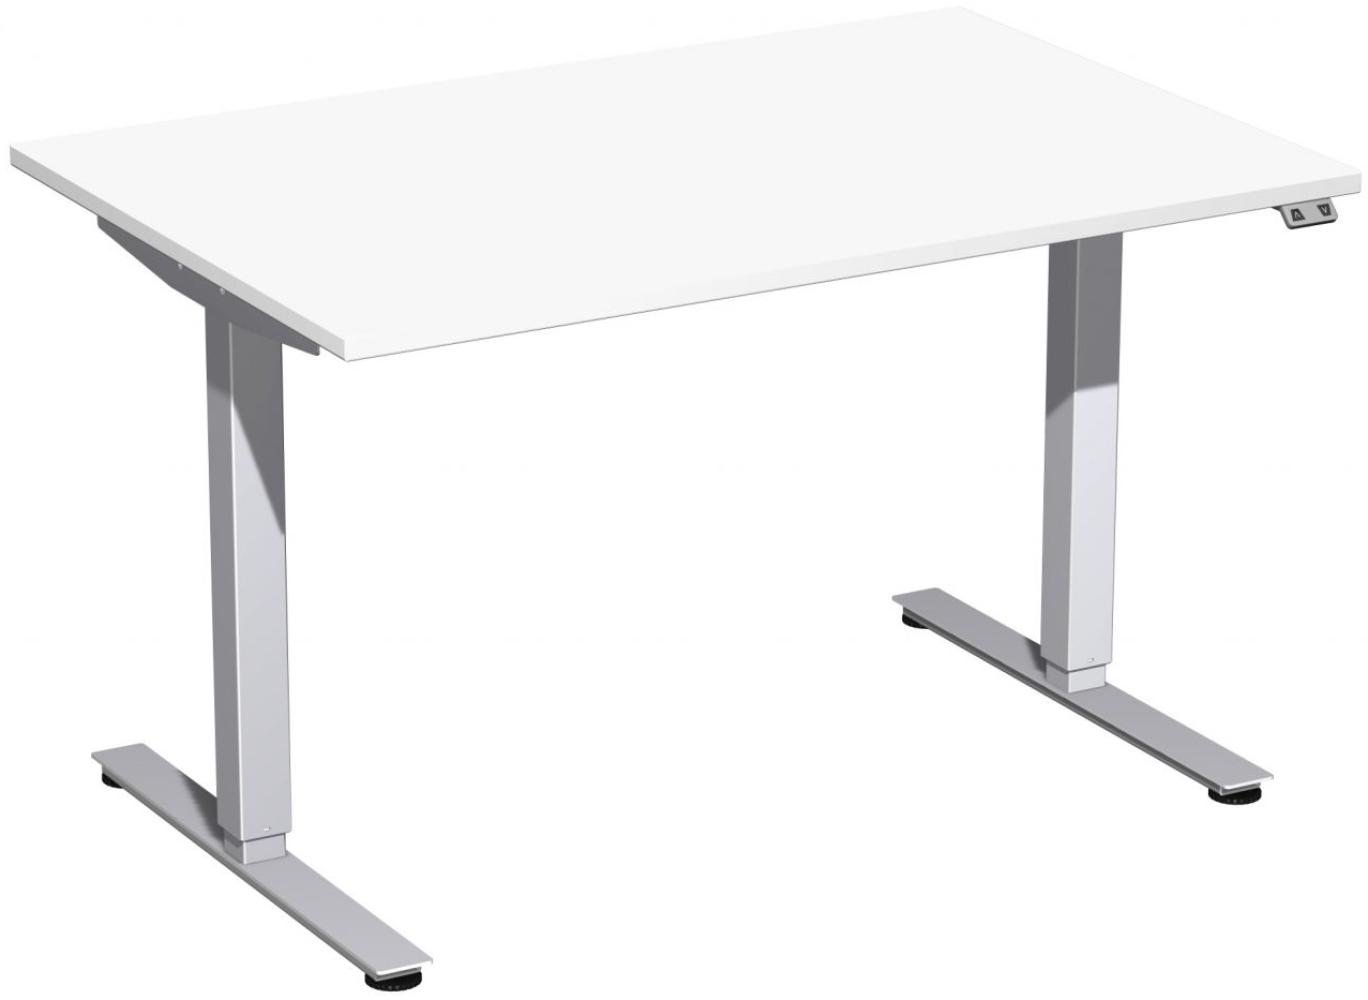 Elektro-Hubtisch 'Smart', höhenverstellbar, 120x80x70-120cm, gerade, Weiß / Silber Bild 1